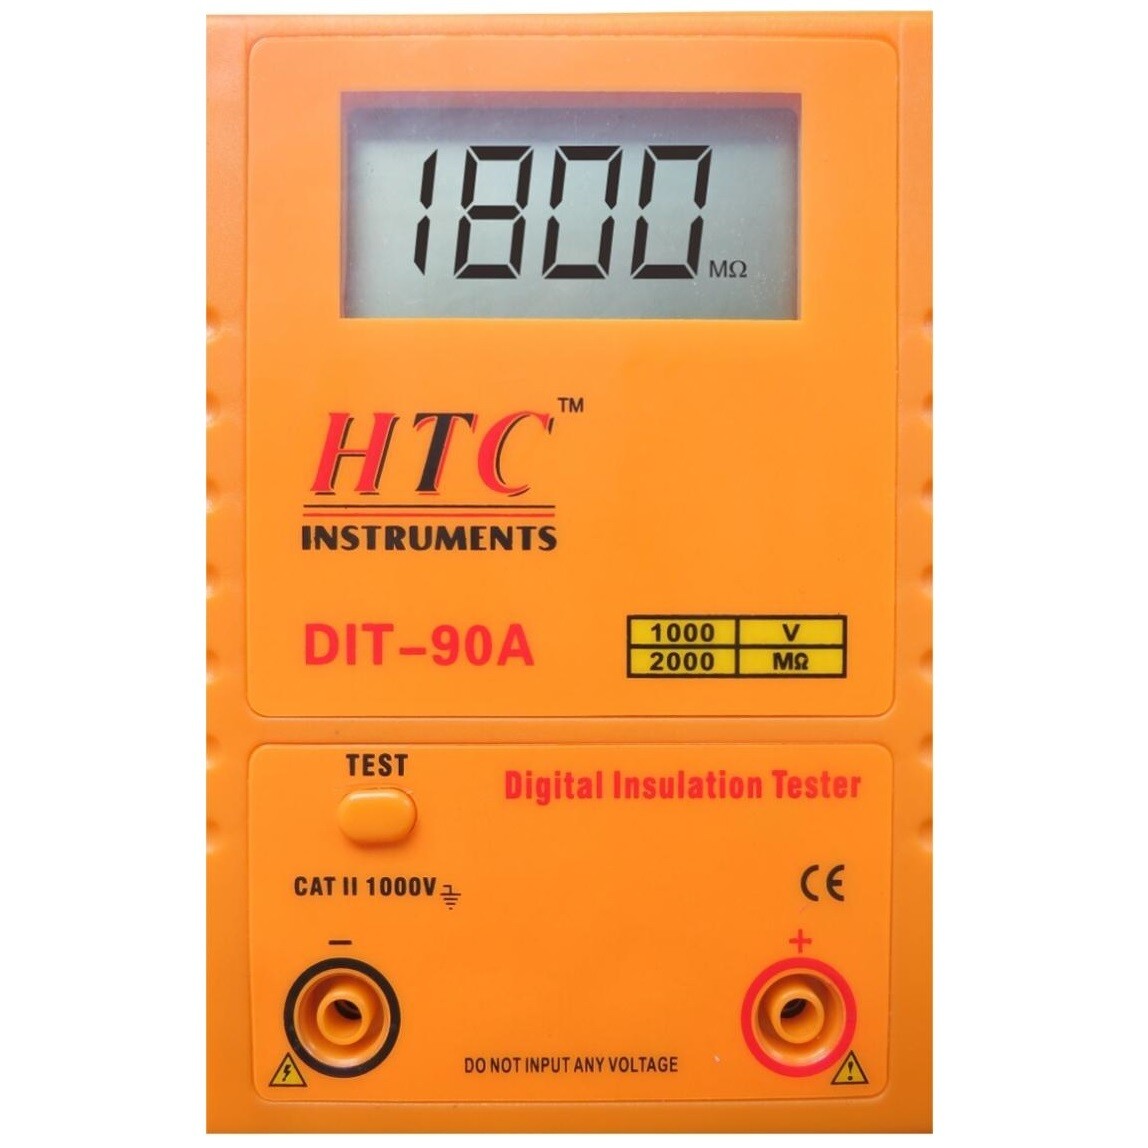 HTC DIT-90A Digital Insulation Tester 1000V - 2000MOhms